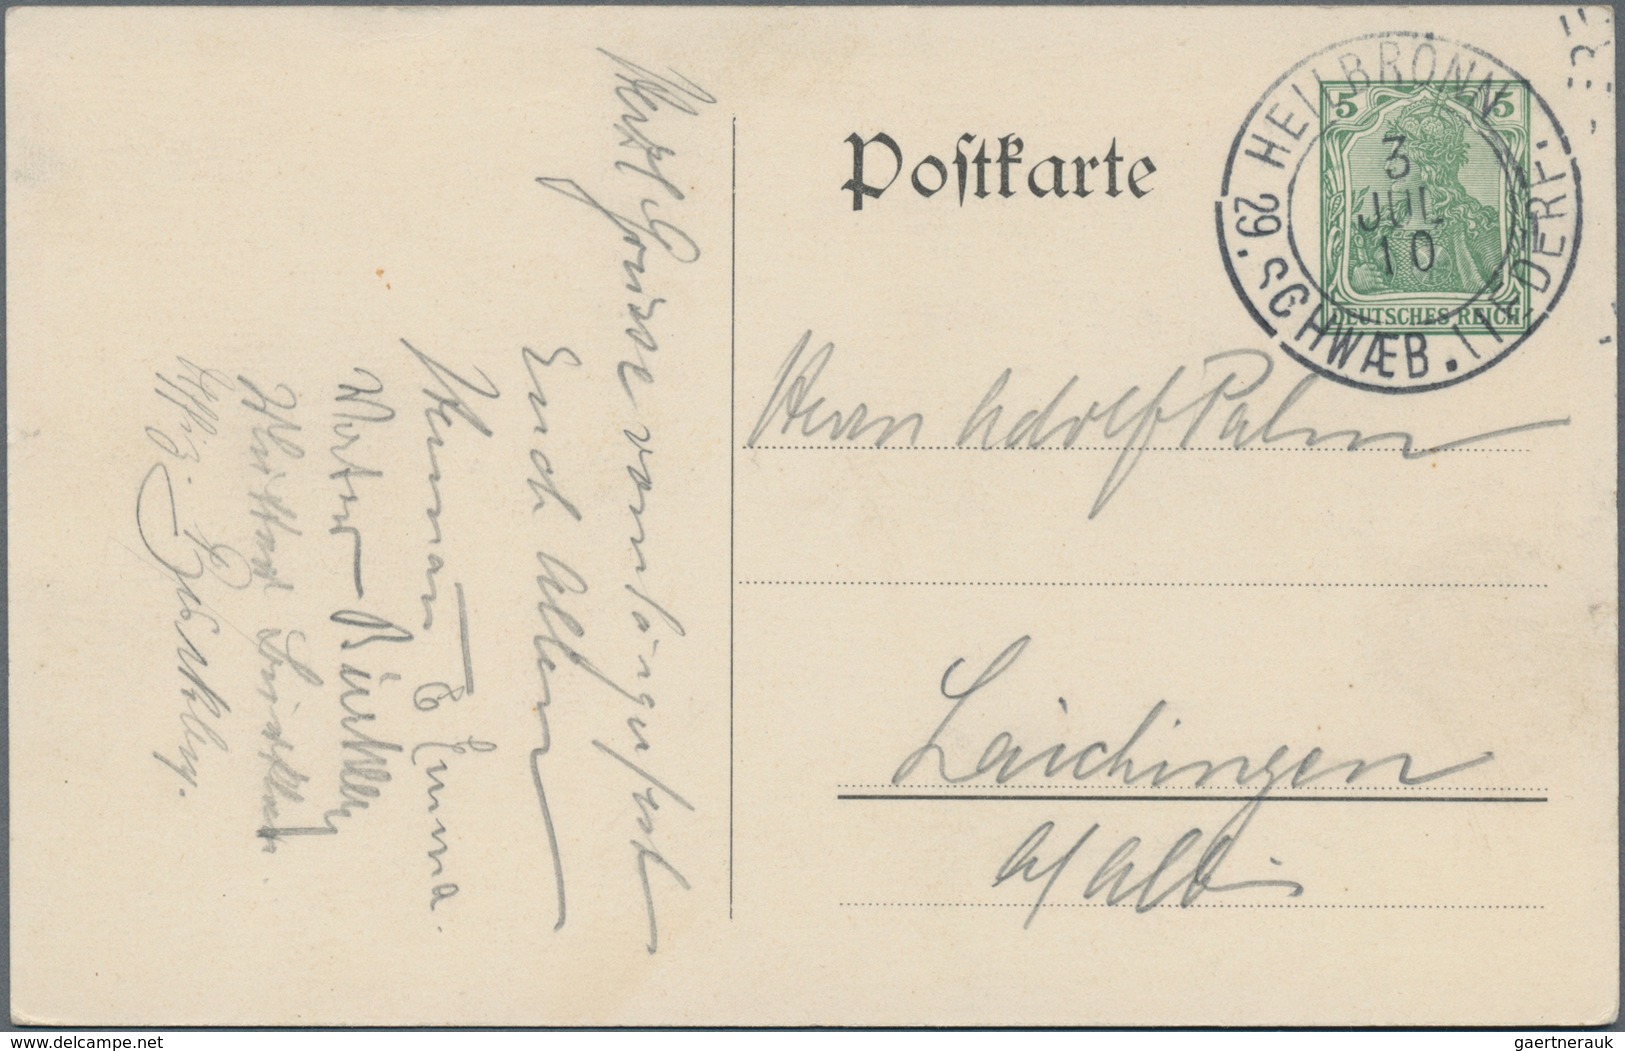 Thematik: Musik / Music: 1910, German Reich. Private Postcard 5p Germania "29tes Allgemeines Liederf - Music